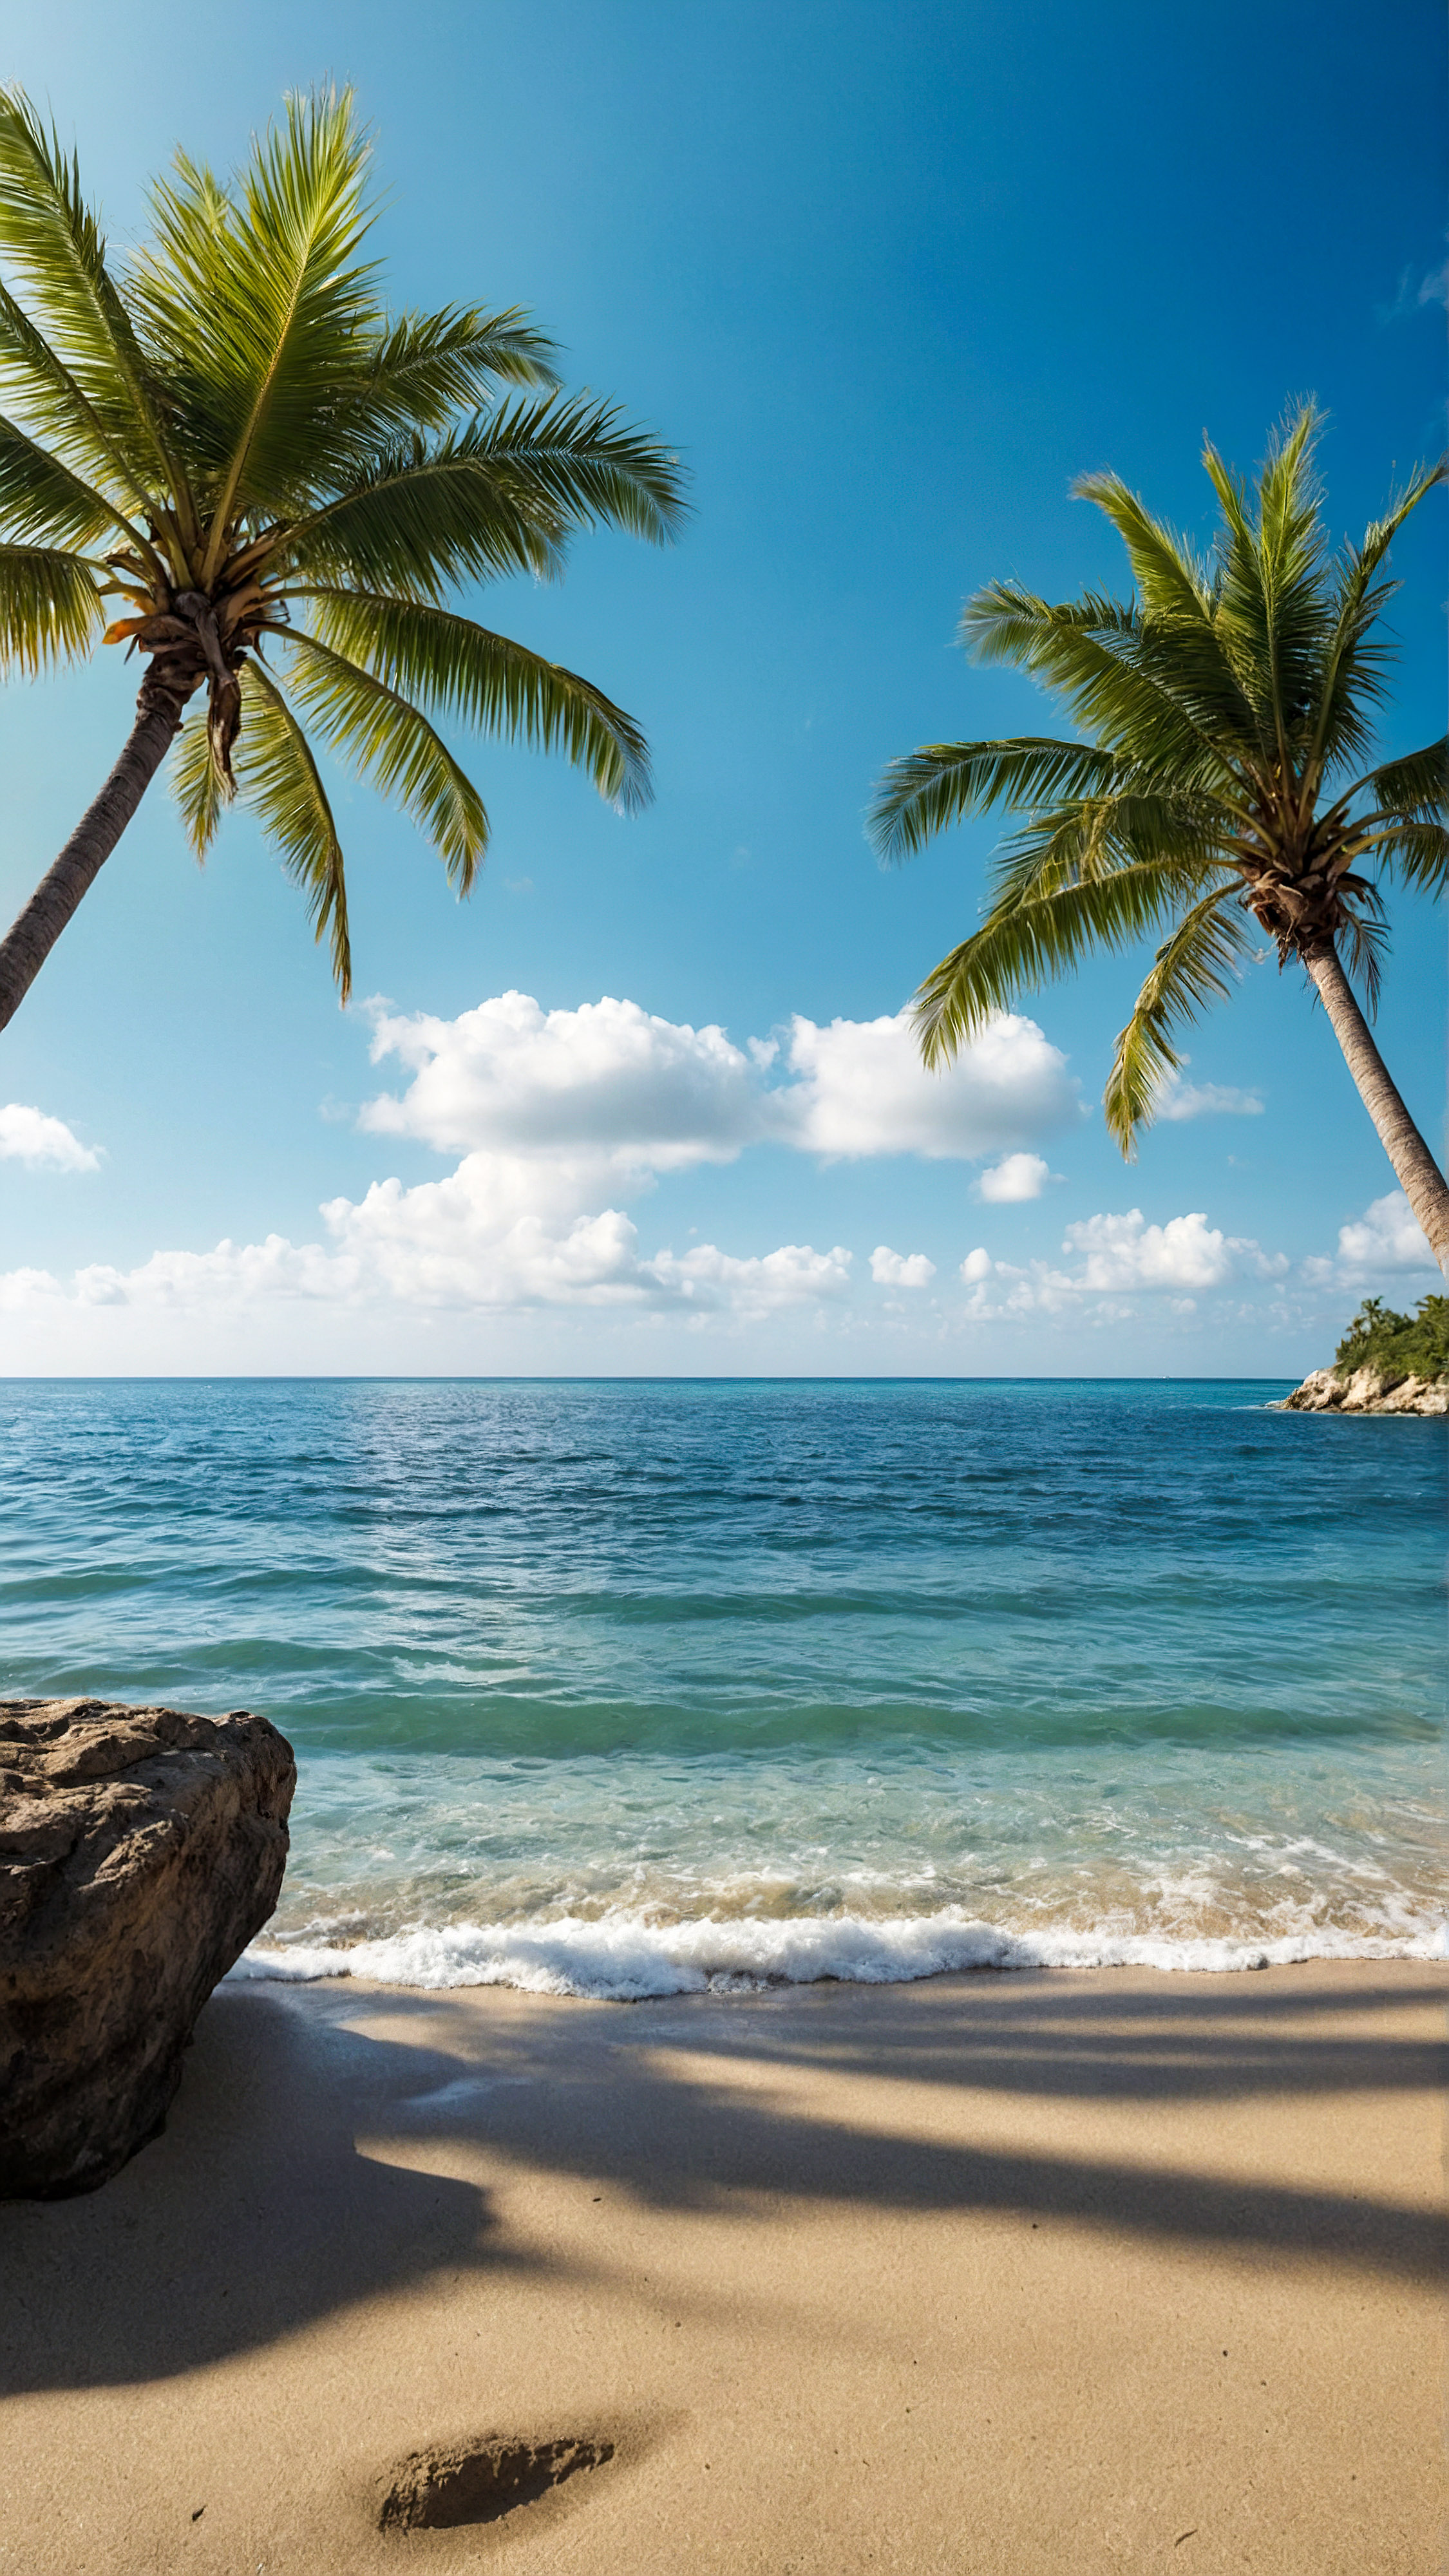 Vivez la tranquillité de notre fond d'écran de plage pour iPhone en 4K, présentant une scène de plage sereine et pittoresque avec un ciel clair, des eaux calmes et des palmiers.